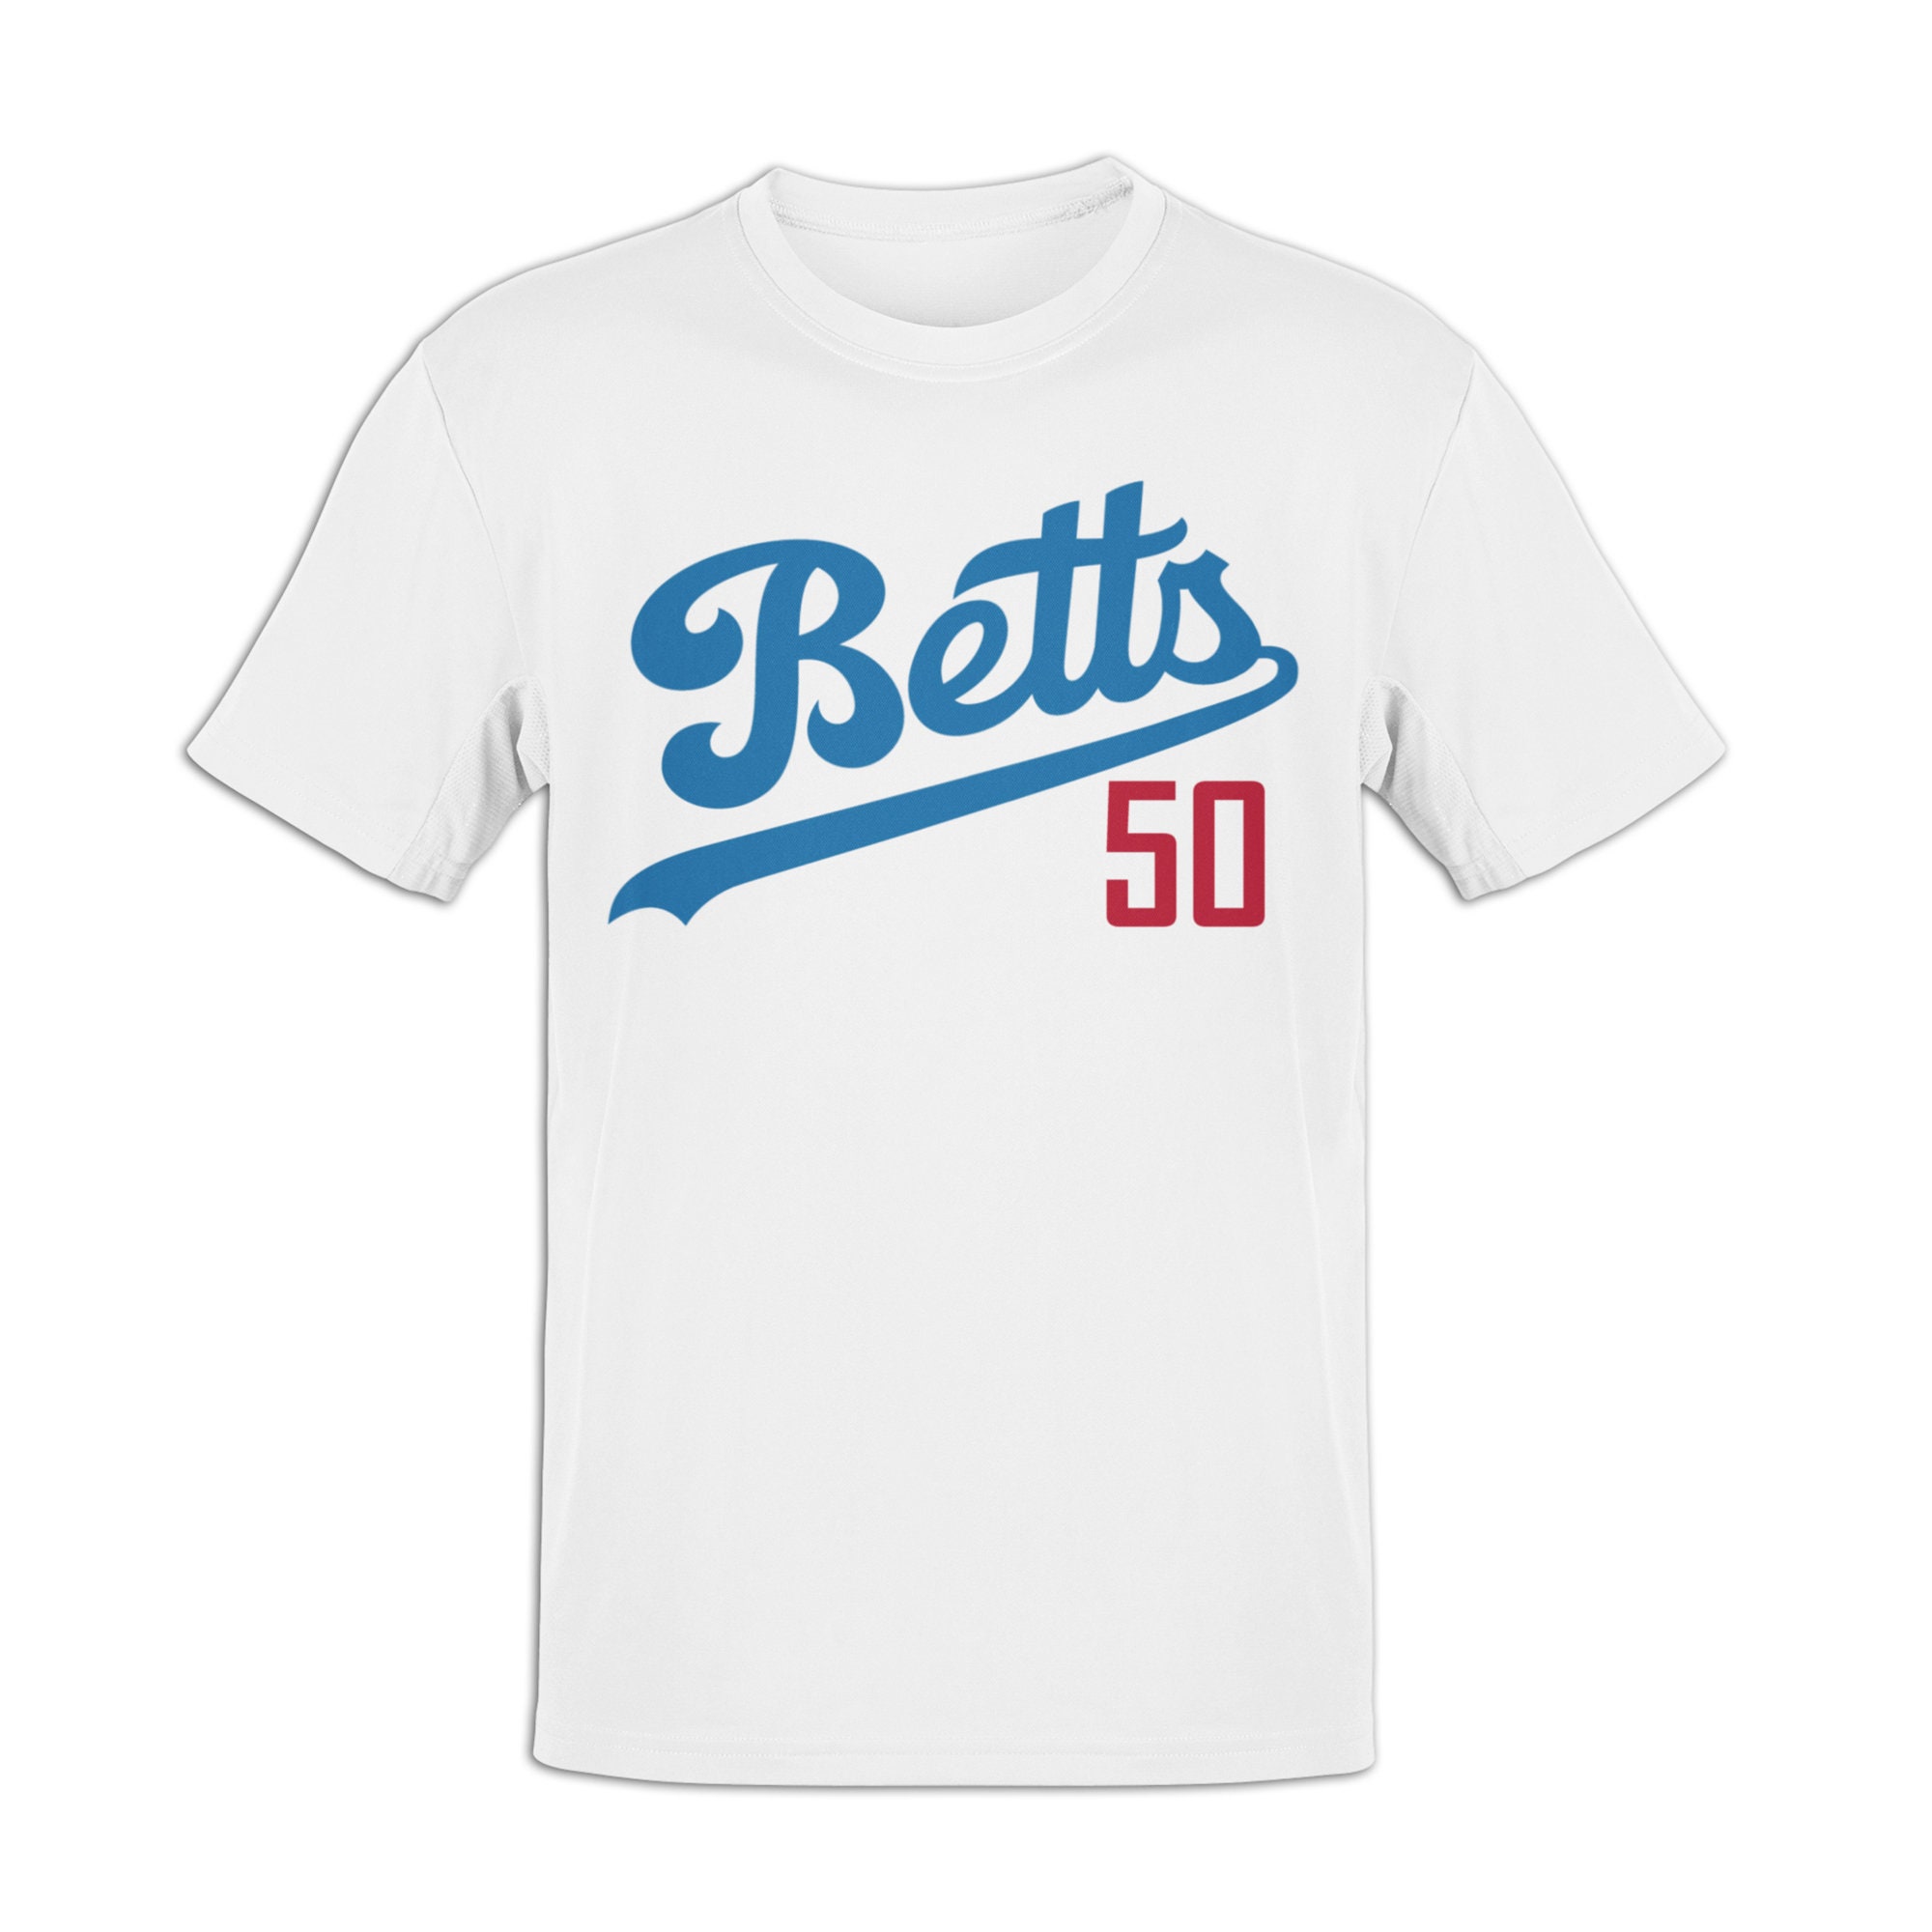 Betts 50 Baseball Shirt Jersey Player Number Fan Favorite 